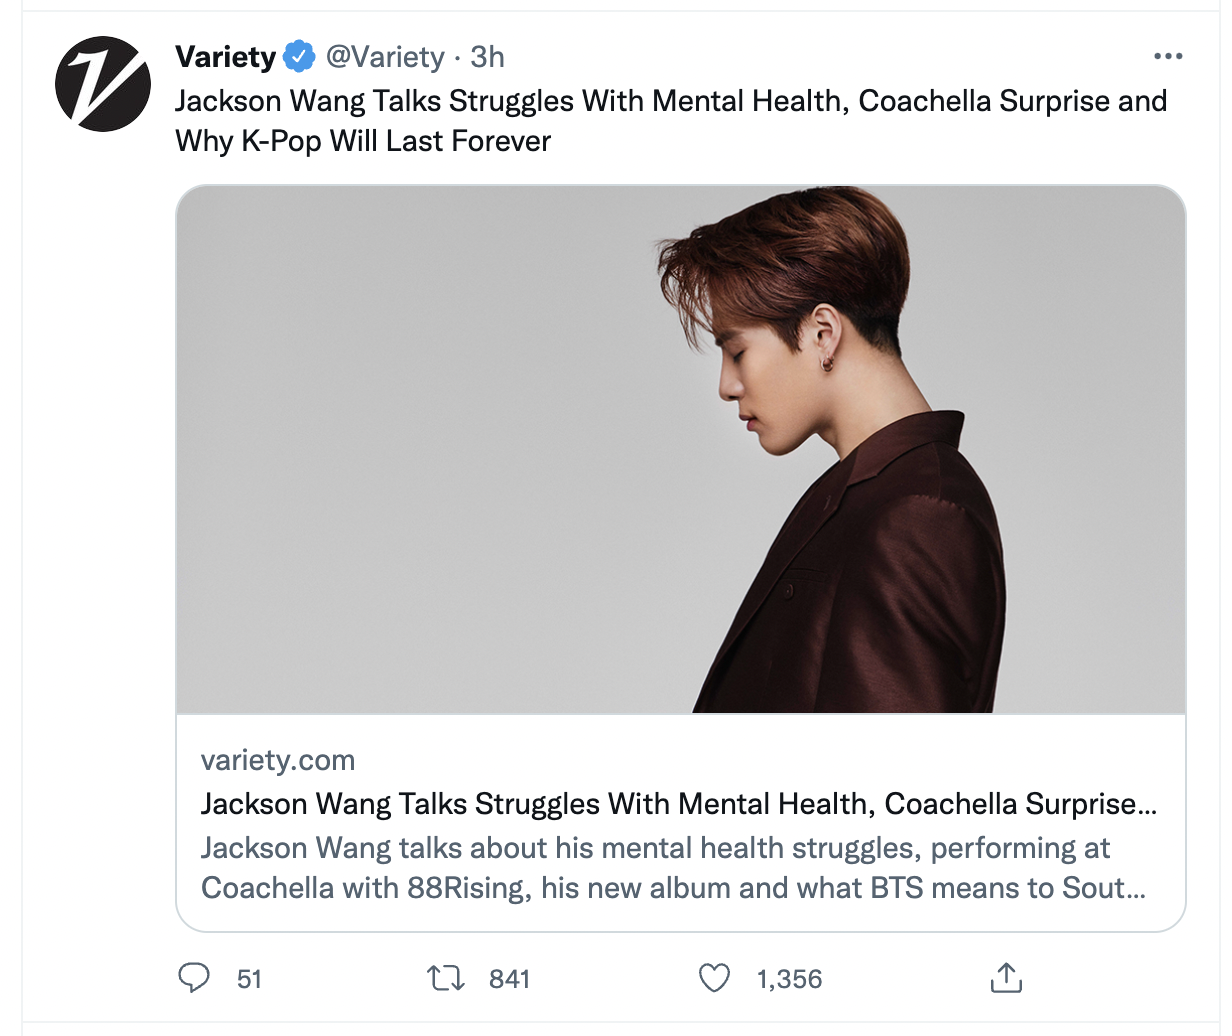 Is Jackson Wang performing at Coachella 2022?